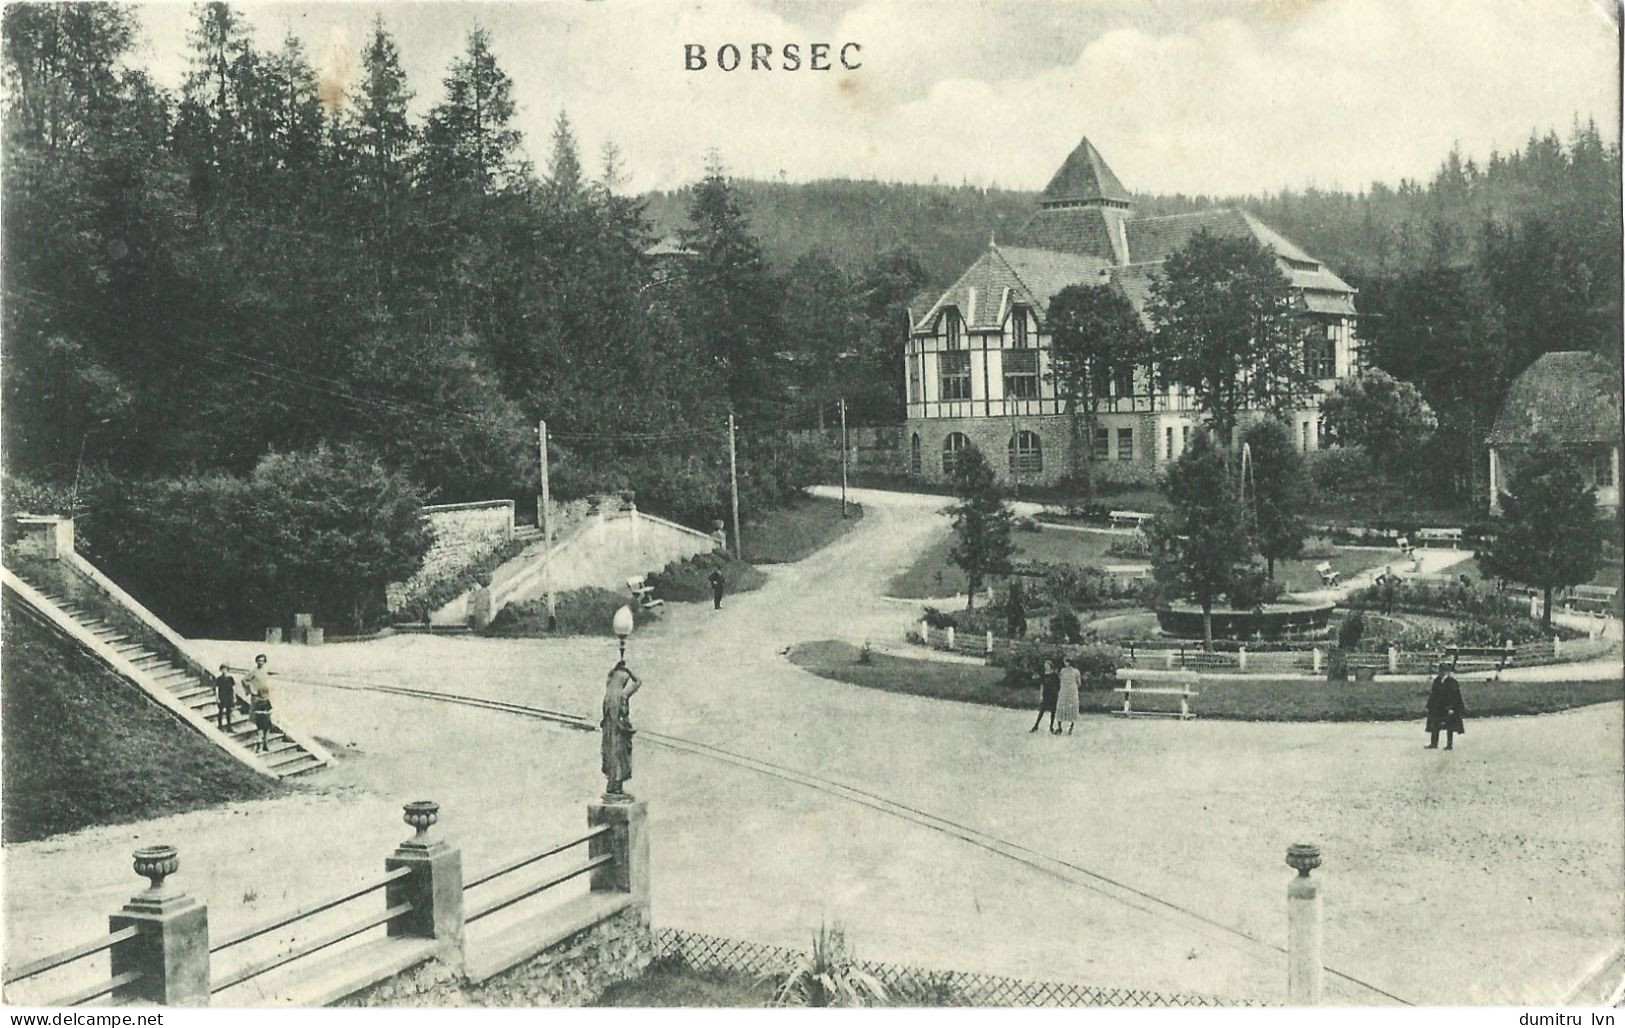 ROMANIA 1930 BORSEC VIEW, BUILDINGS, ARCHITECTURE, PARK, PEOPLE, FOREST - Roemenië